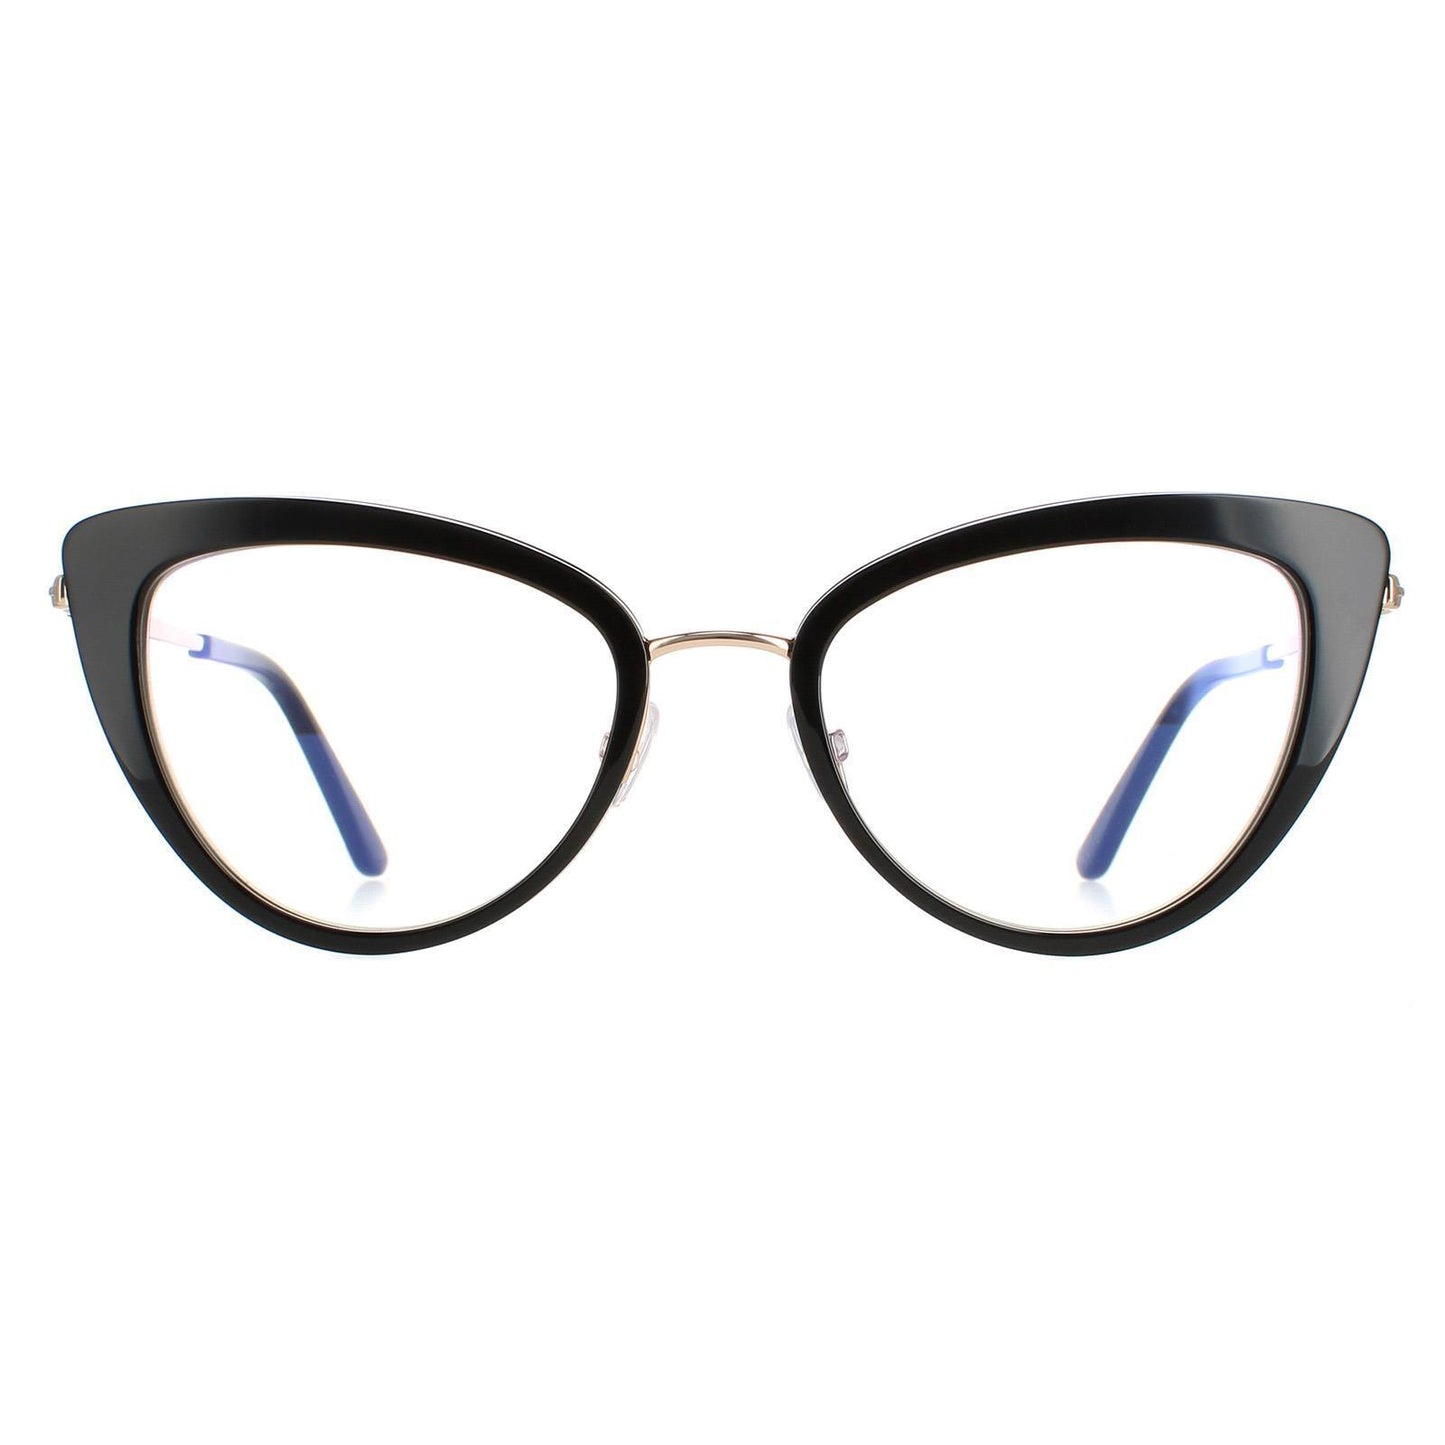 Tom Ford FT5580B-001-53  New Eyeglasses